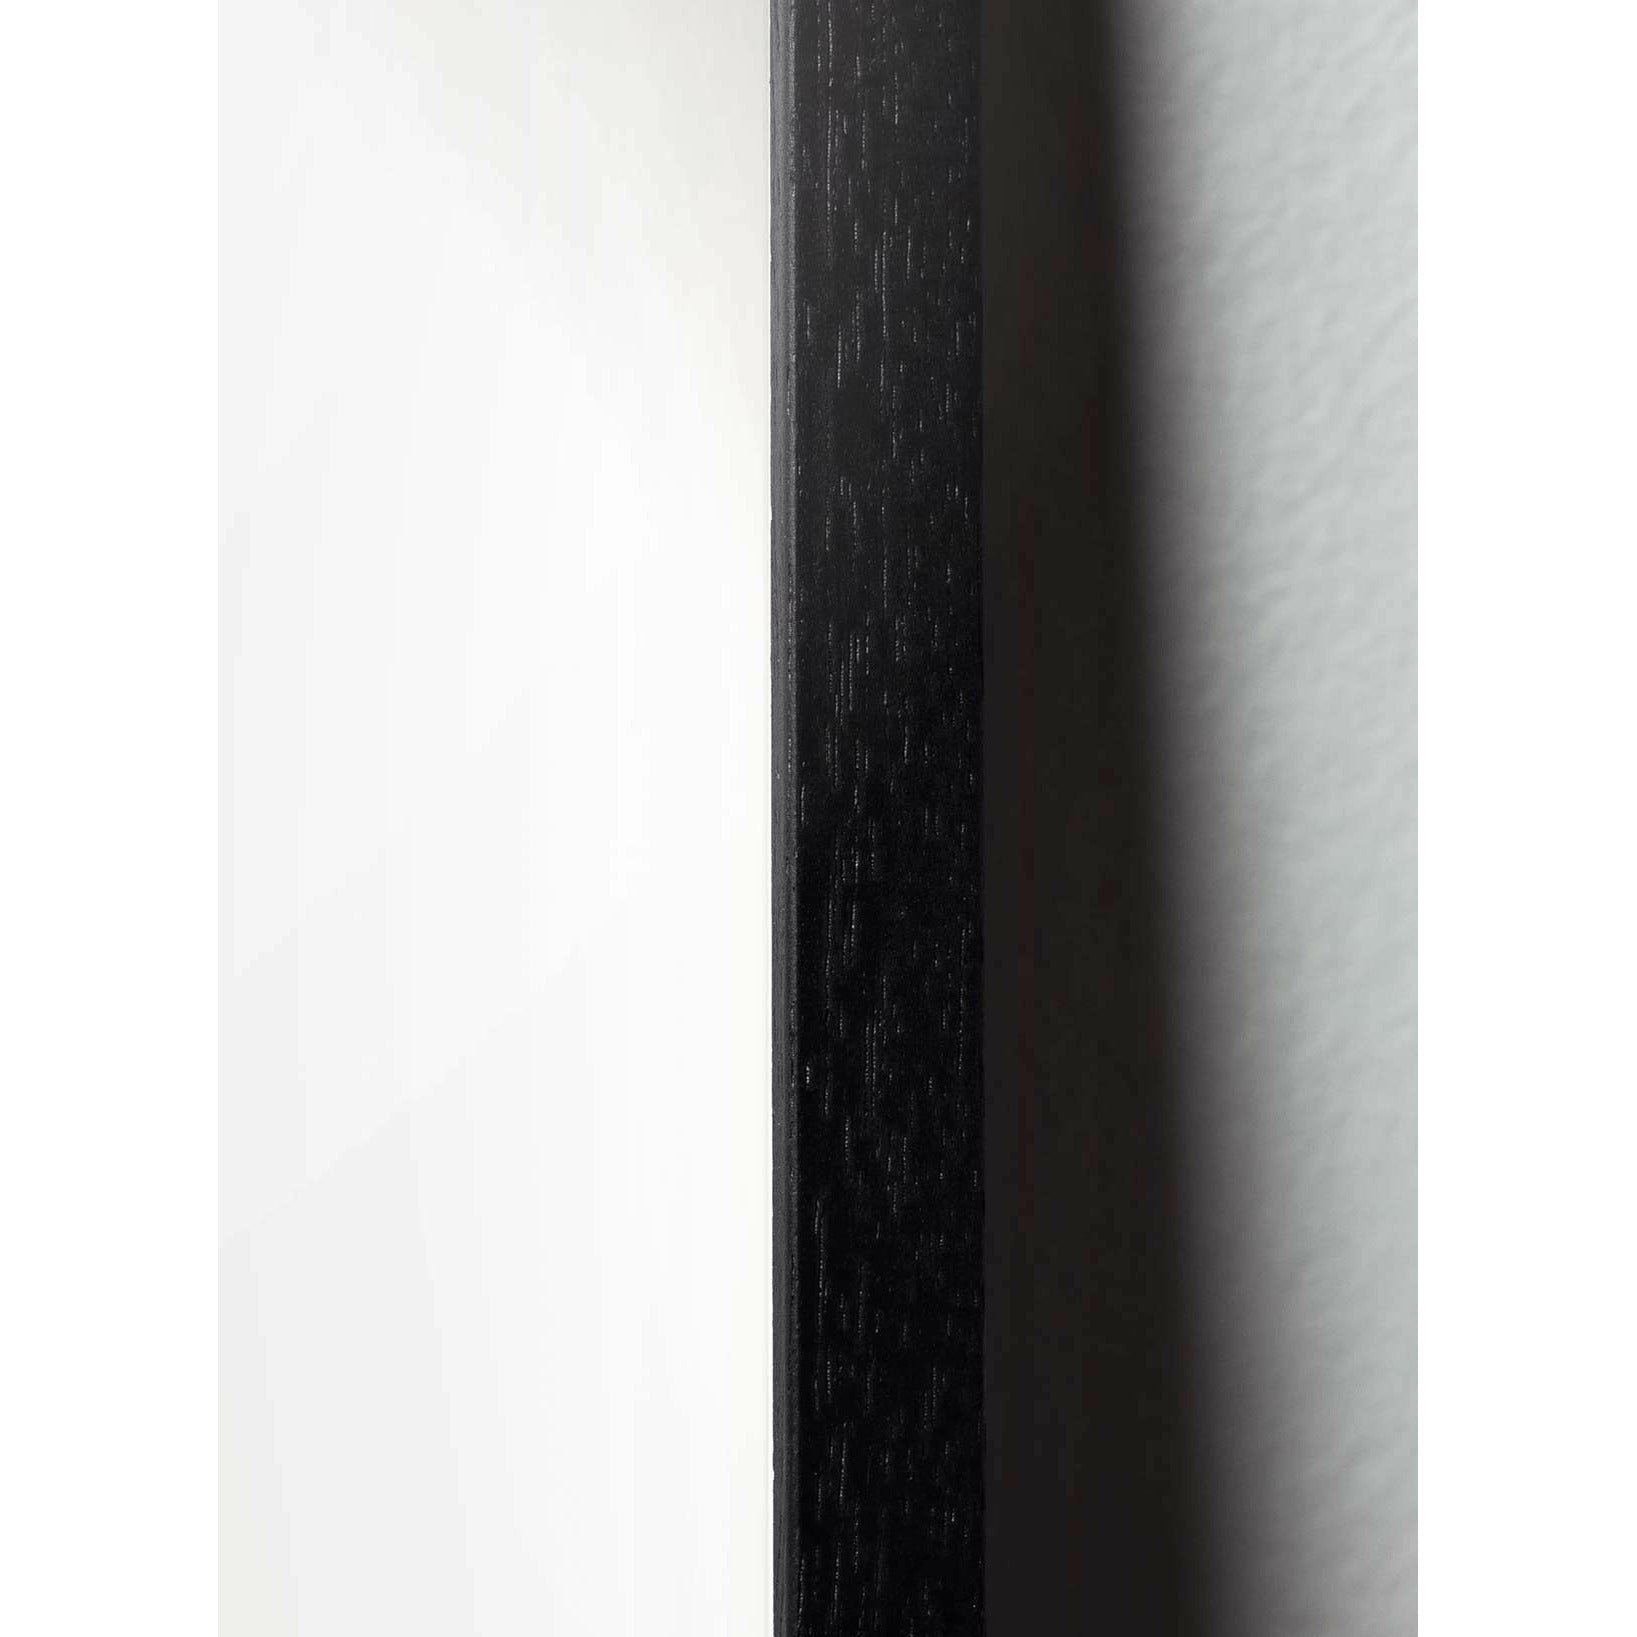 Póster clásico de pino de pino de creación, marco en madera lacada negra de 70x100 cm, fondo rojo